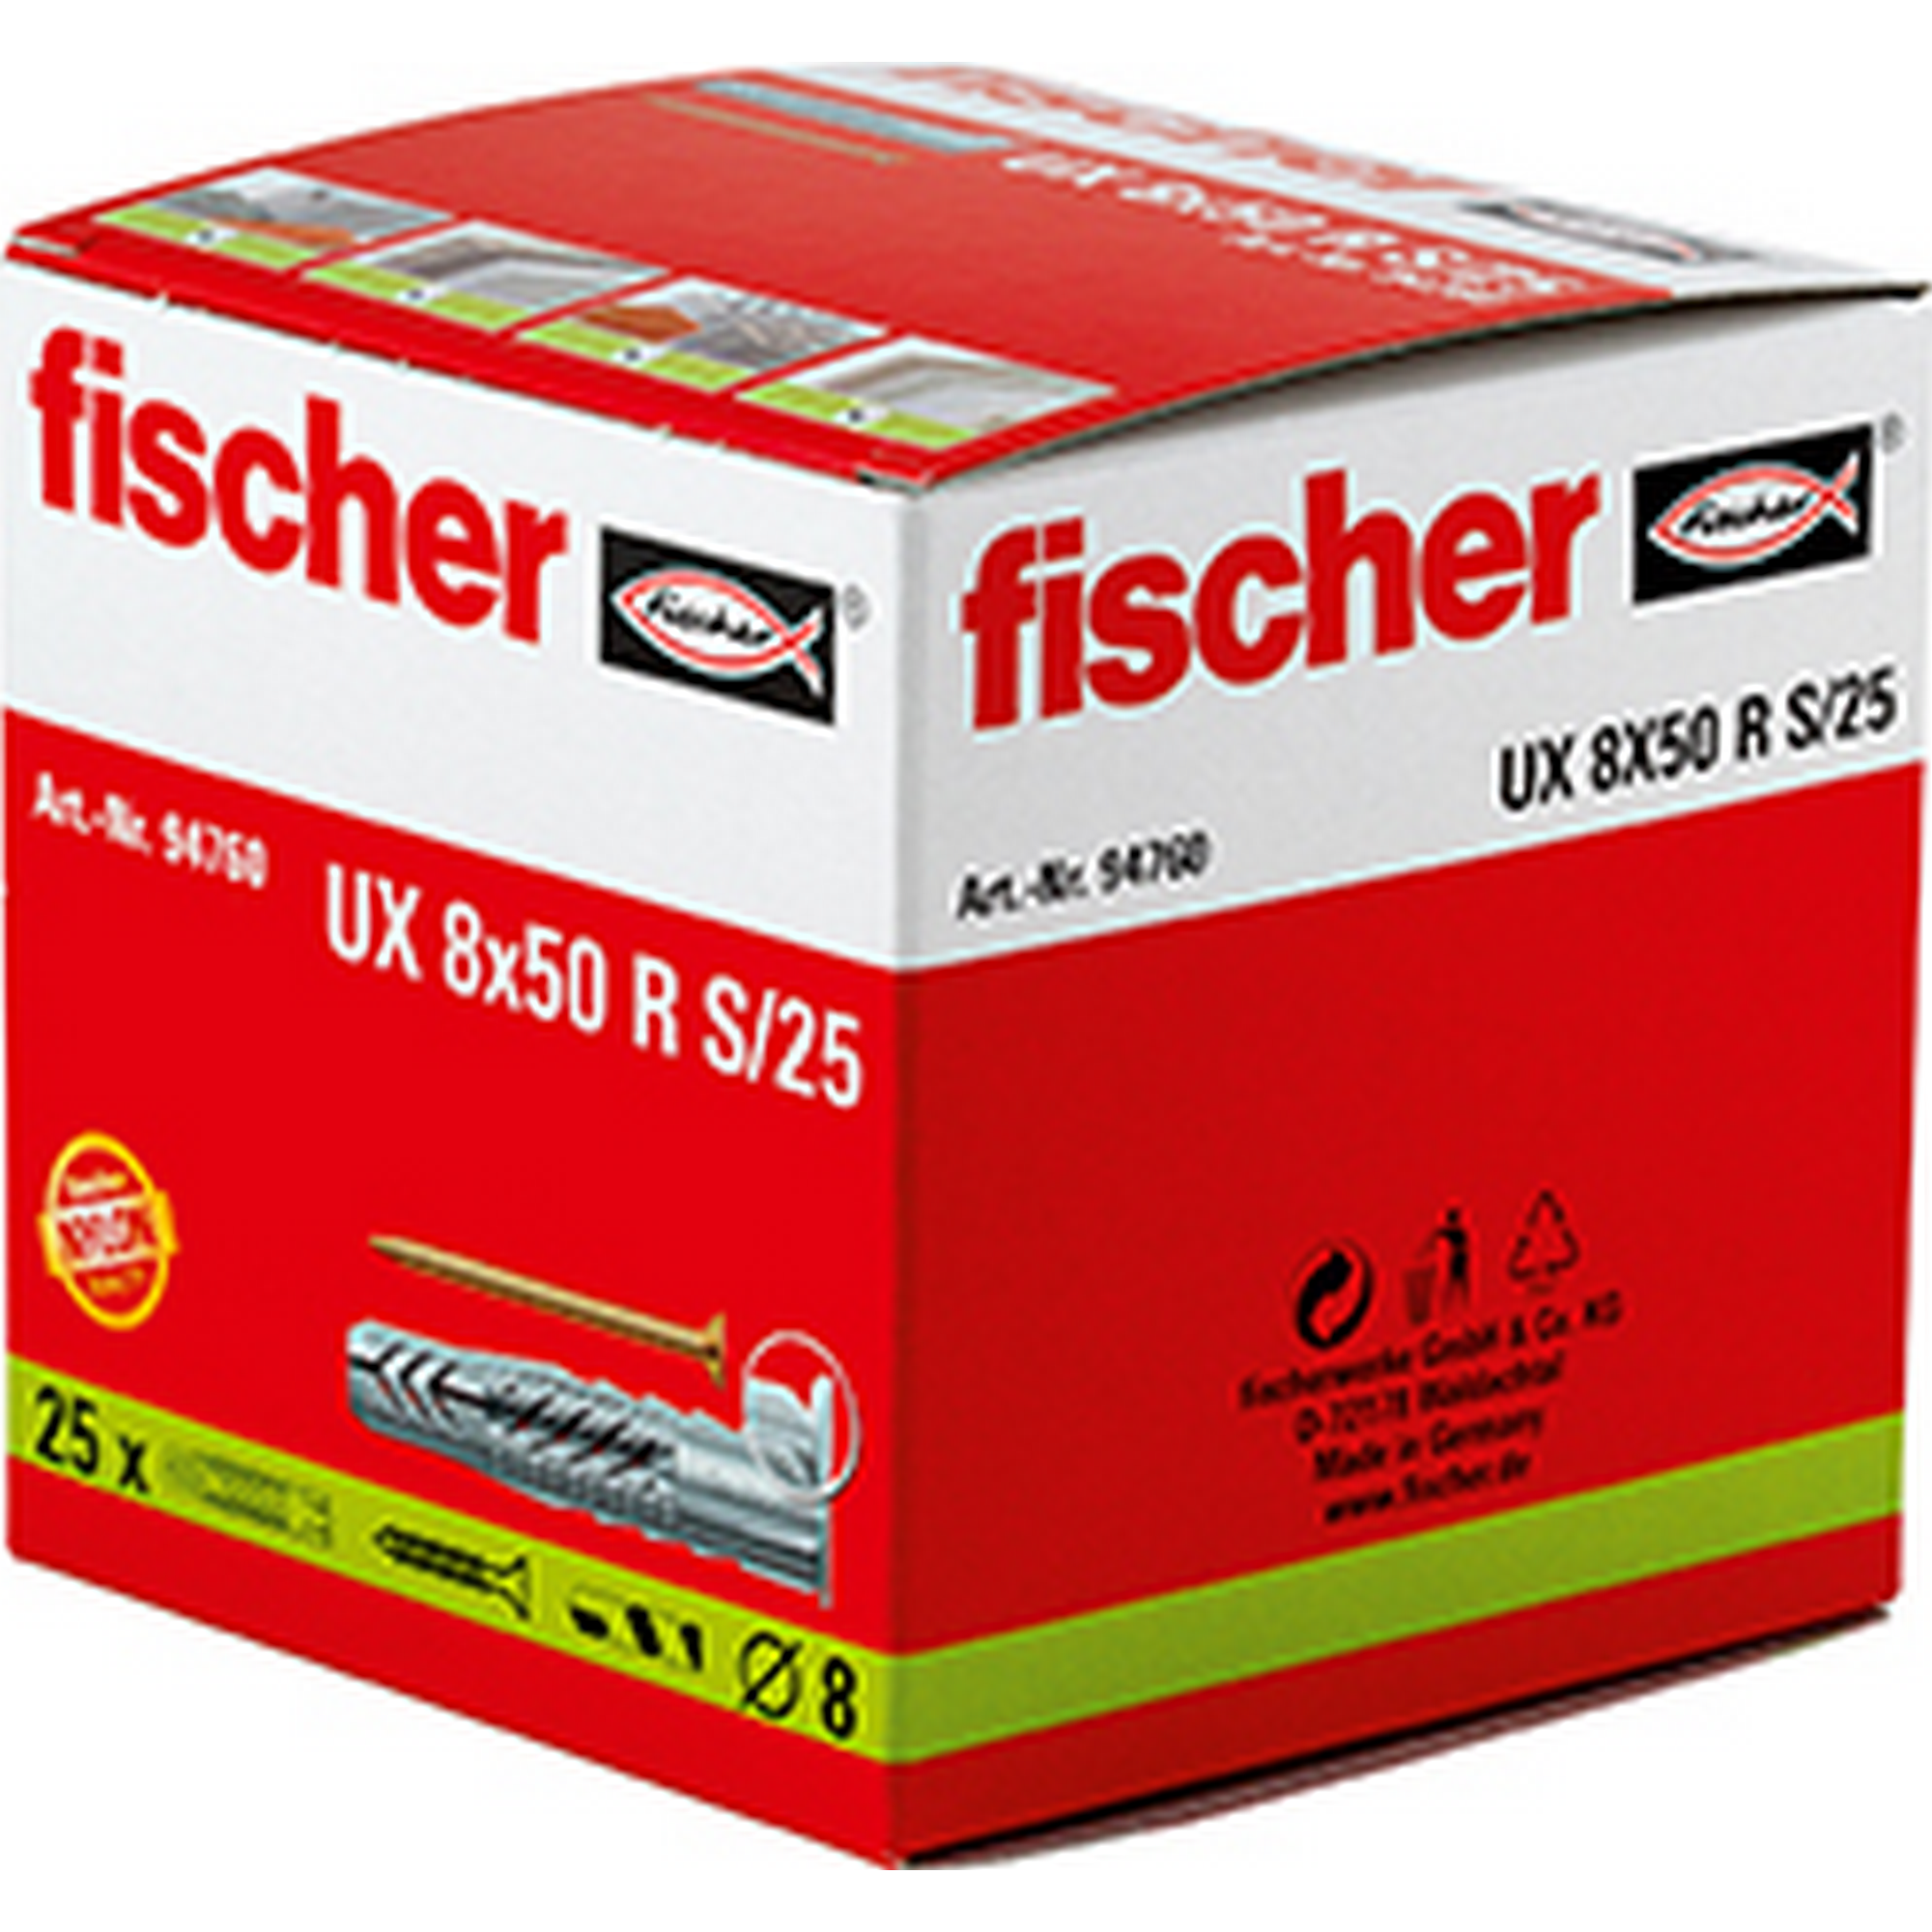 fischer Universaldübel UX 8 x 50 R S/25 mit Rand und Schraube 25 Stück + product picture